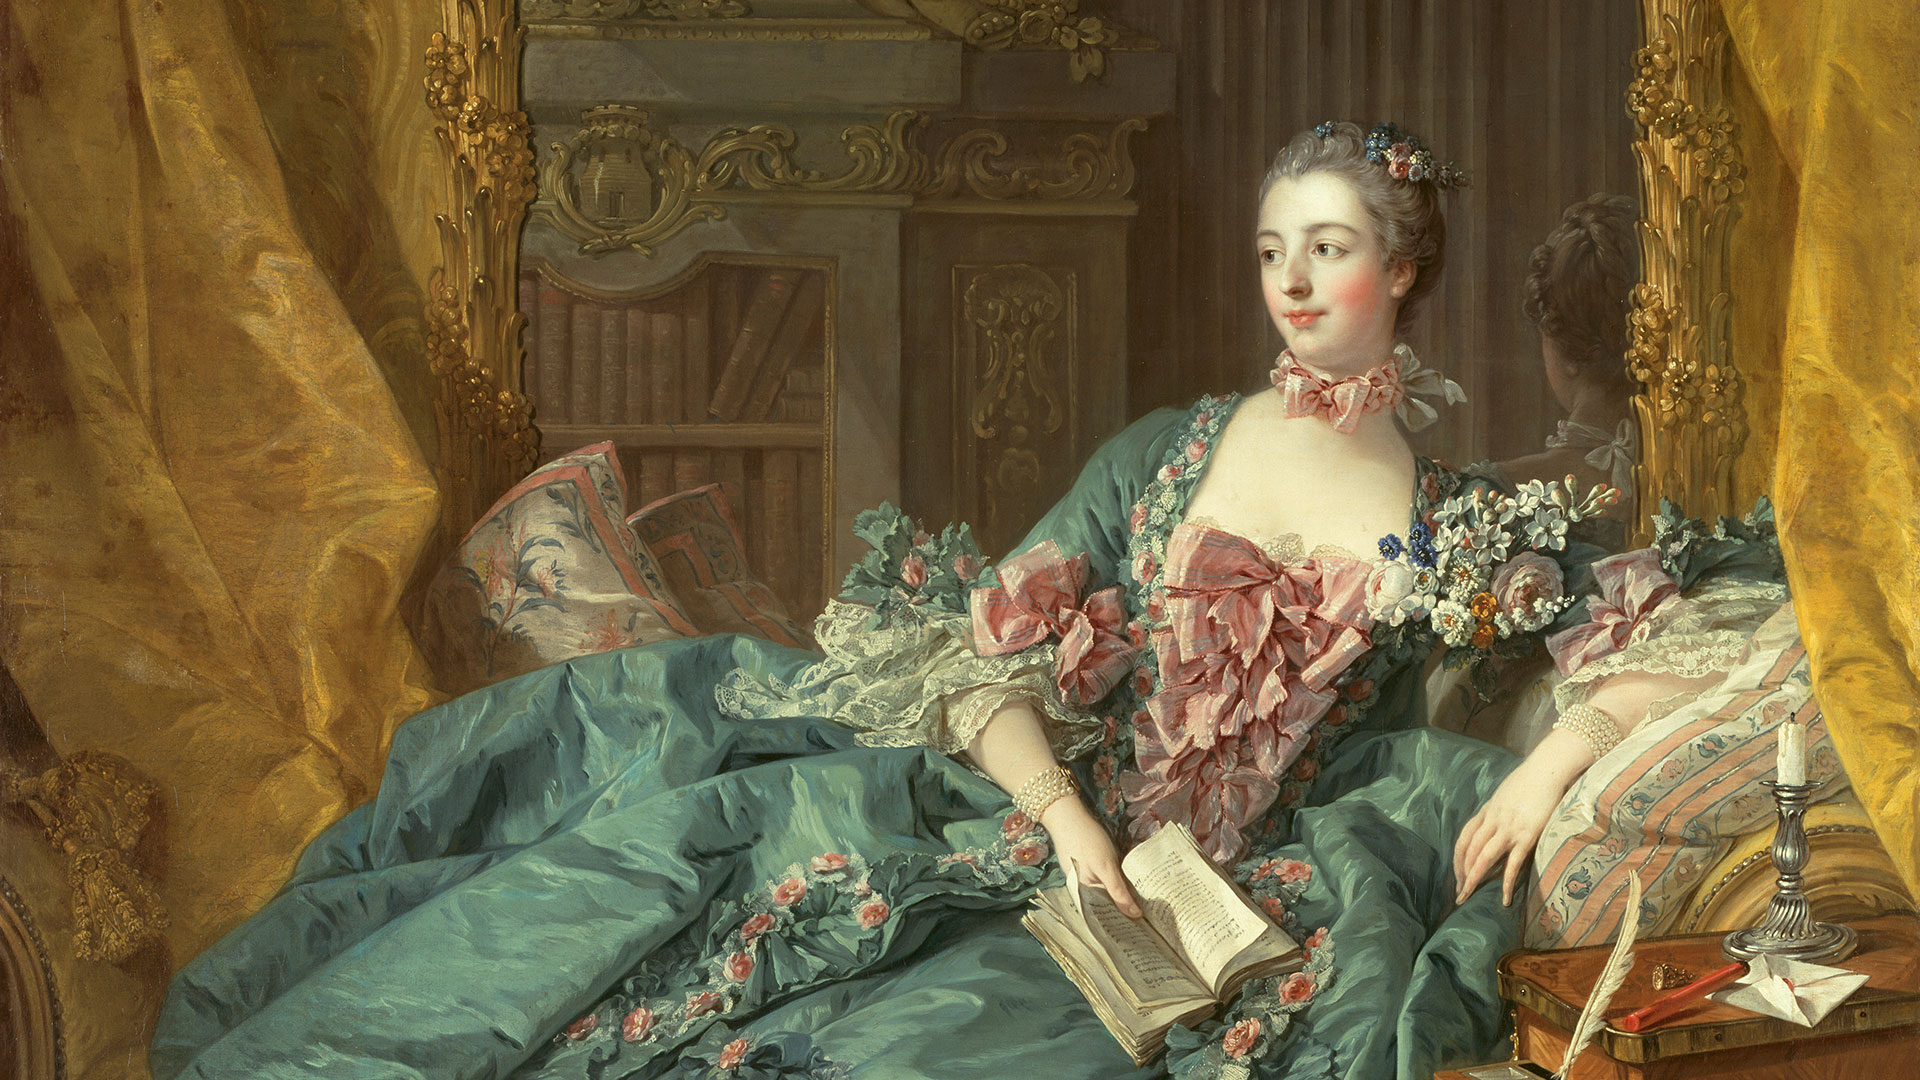 Detailausschnitt des Gemäldes mit der Frau in blauem Kleid. Sie hält ein Buch in ihrer Hand und schaut zur Seite.